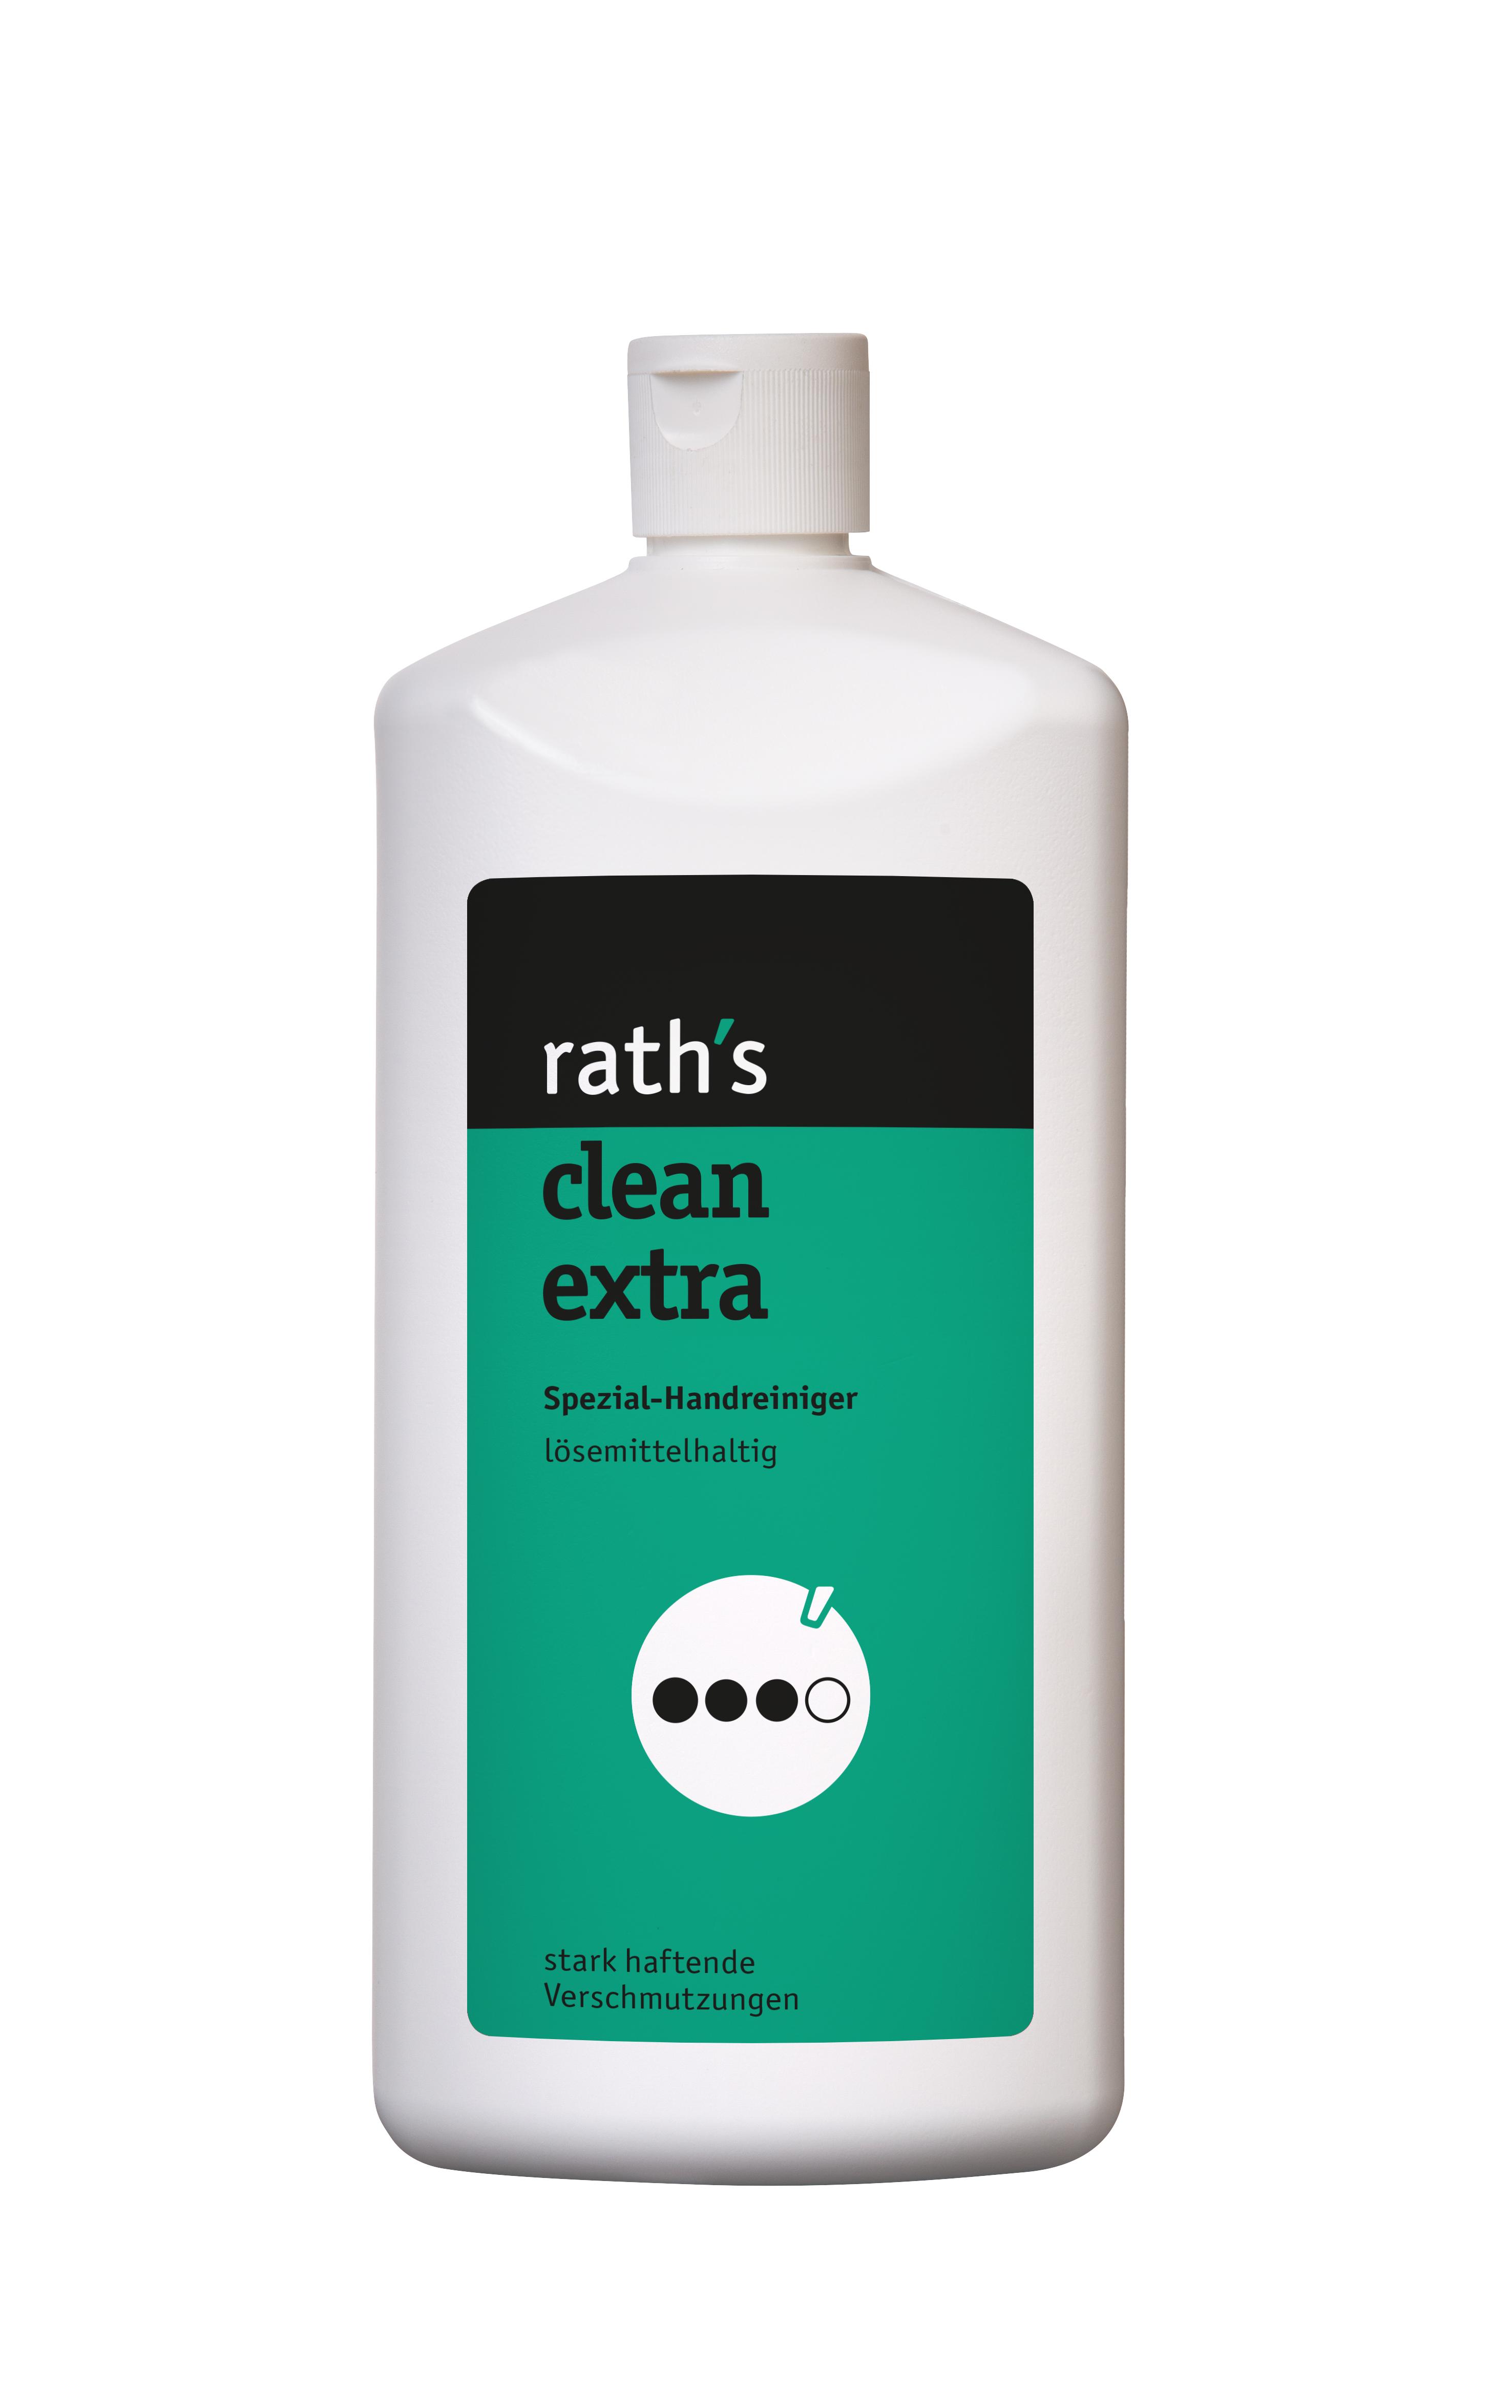 Rath´s Clean Extra, Handreiniger, Reibemittelfrei, lösemittelhaltig 1,0 L | reinigen waschen mit Lösemitteln